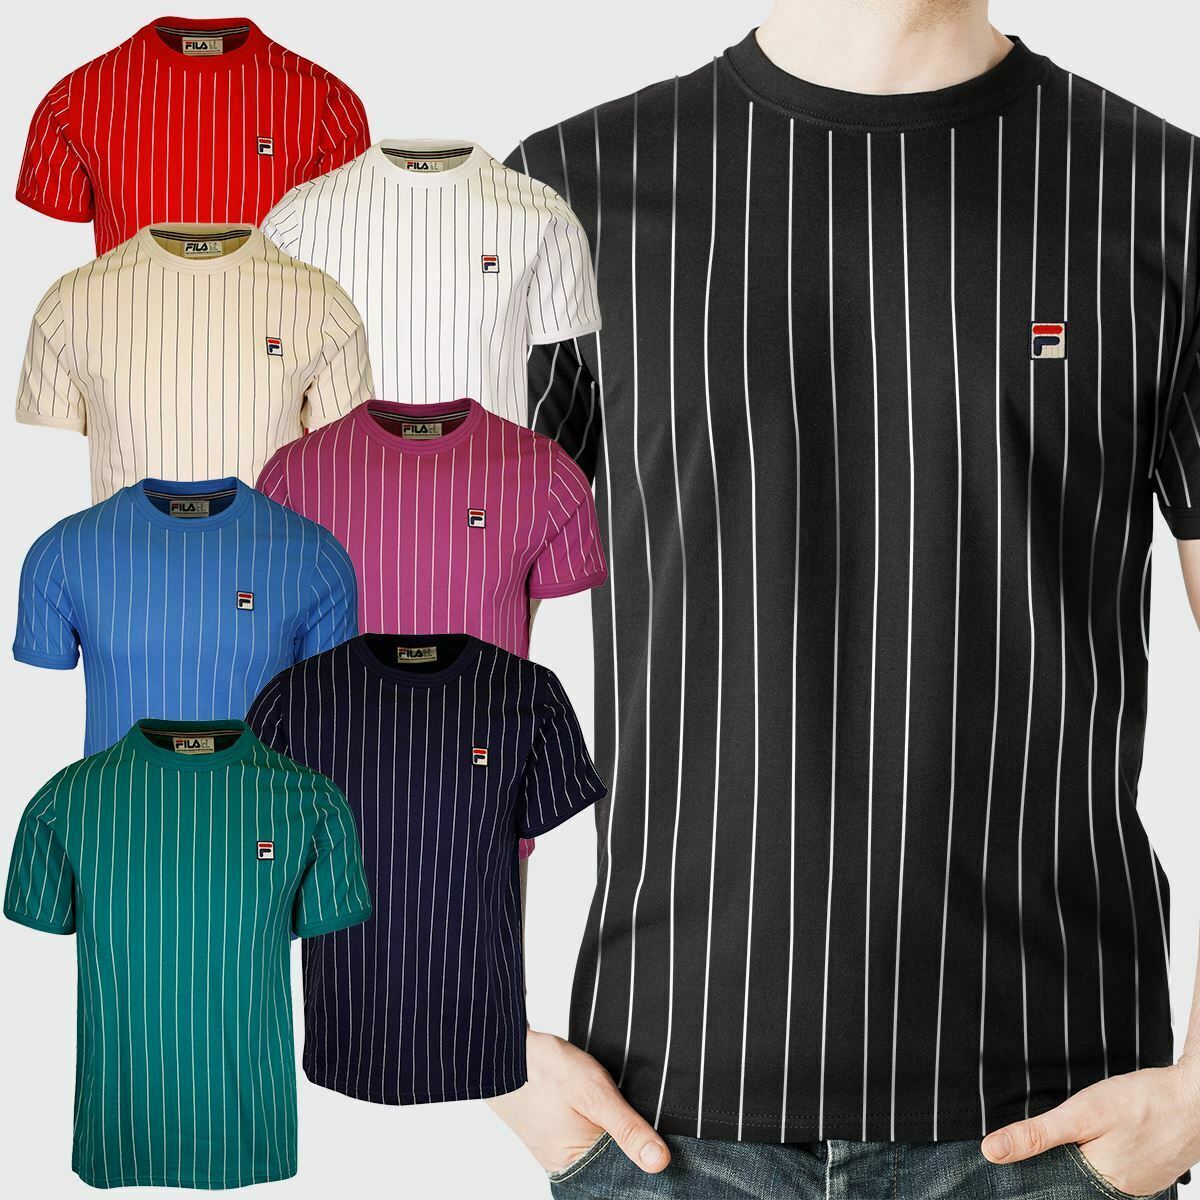 FILA Men's Striped F-Box S/S T-Shirt Size XS-S